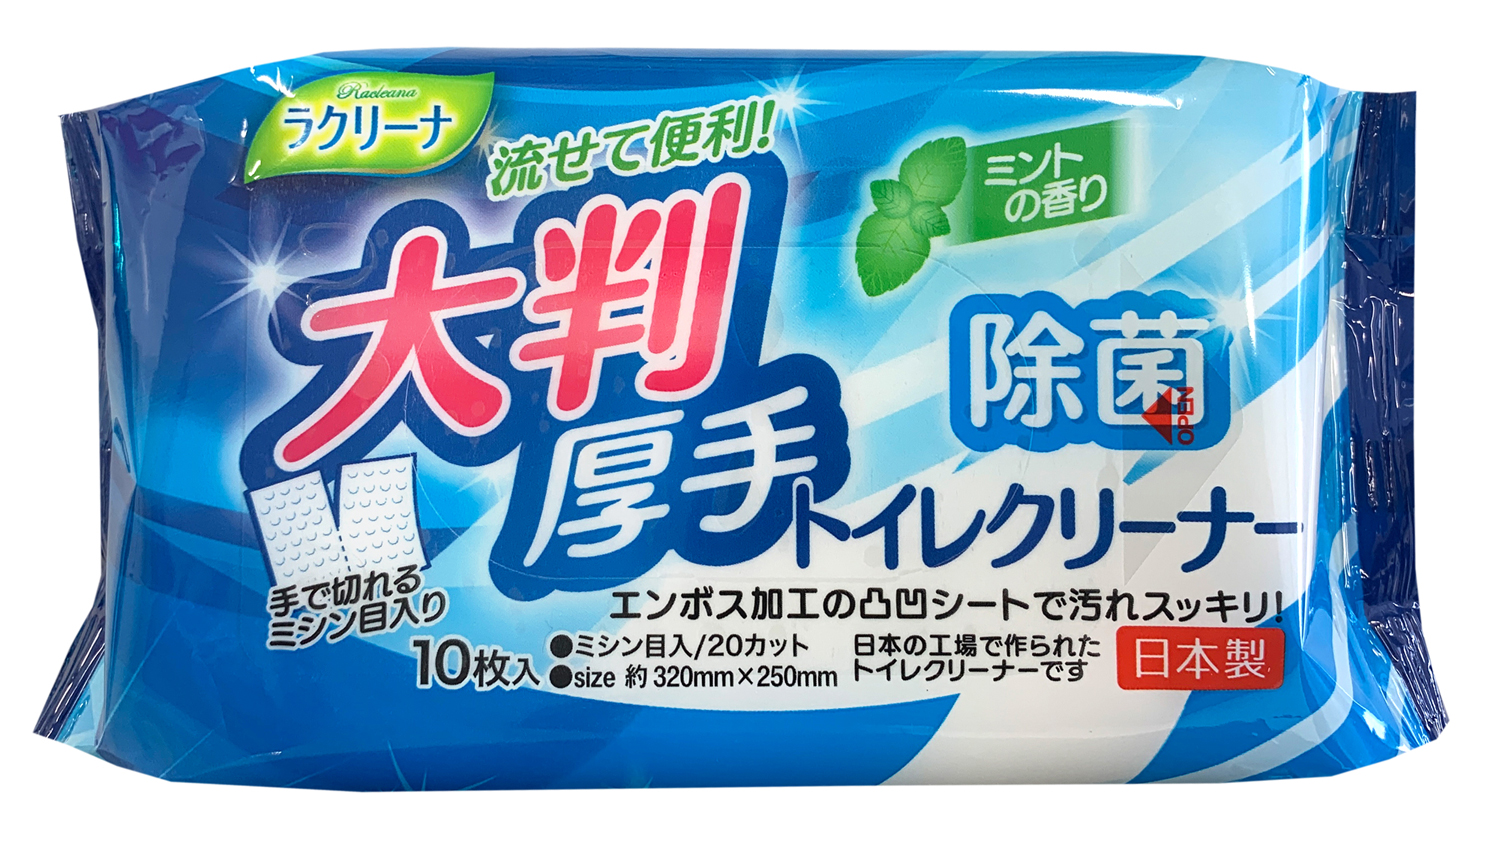 各種掃除用クリーナー | ウェットティッシュ、家庭用品のOEM生産なら昭和紙工株式会社